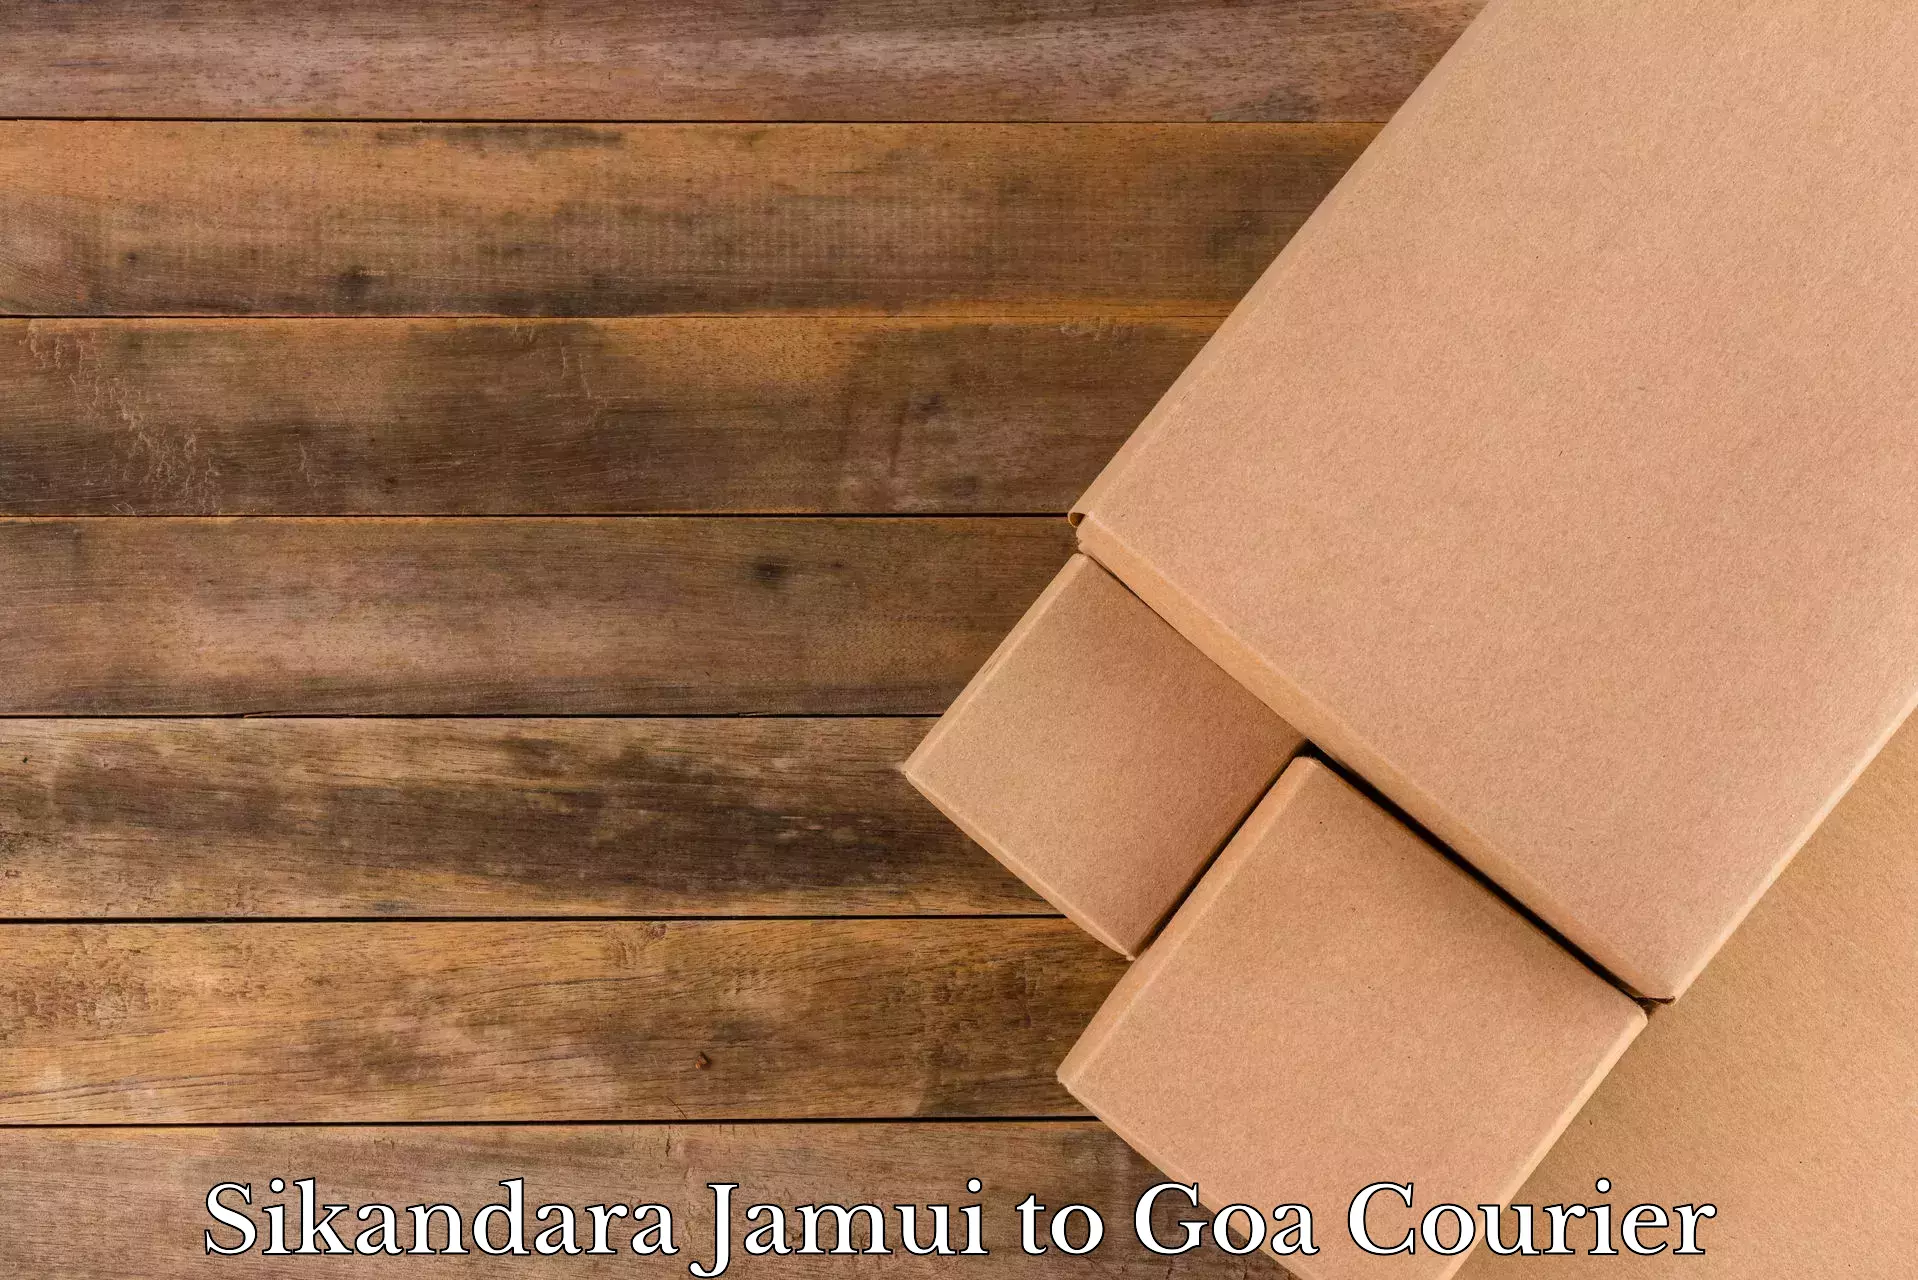 Household moving service Sikandara Jamui to Goa